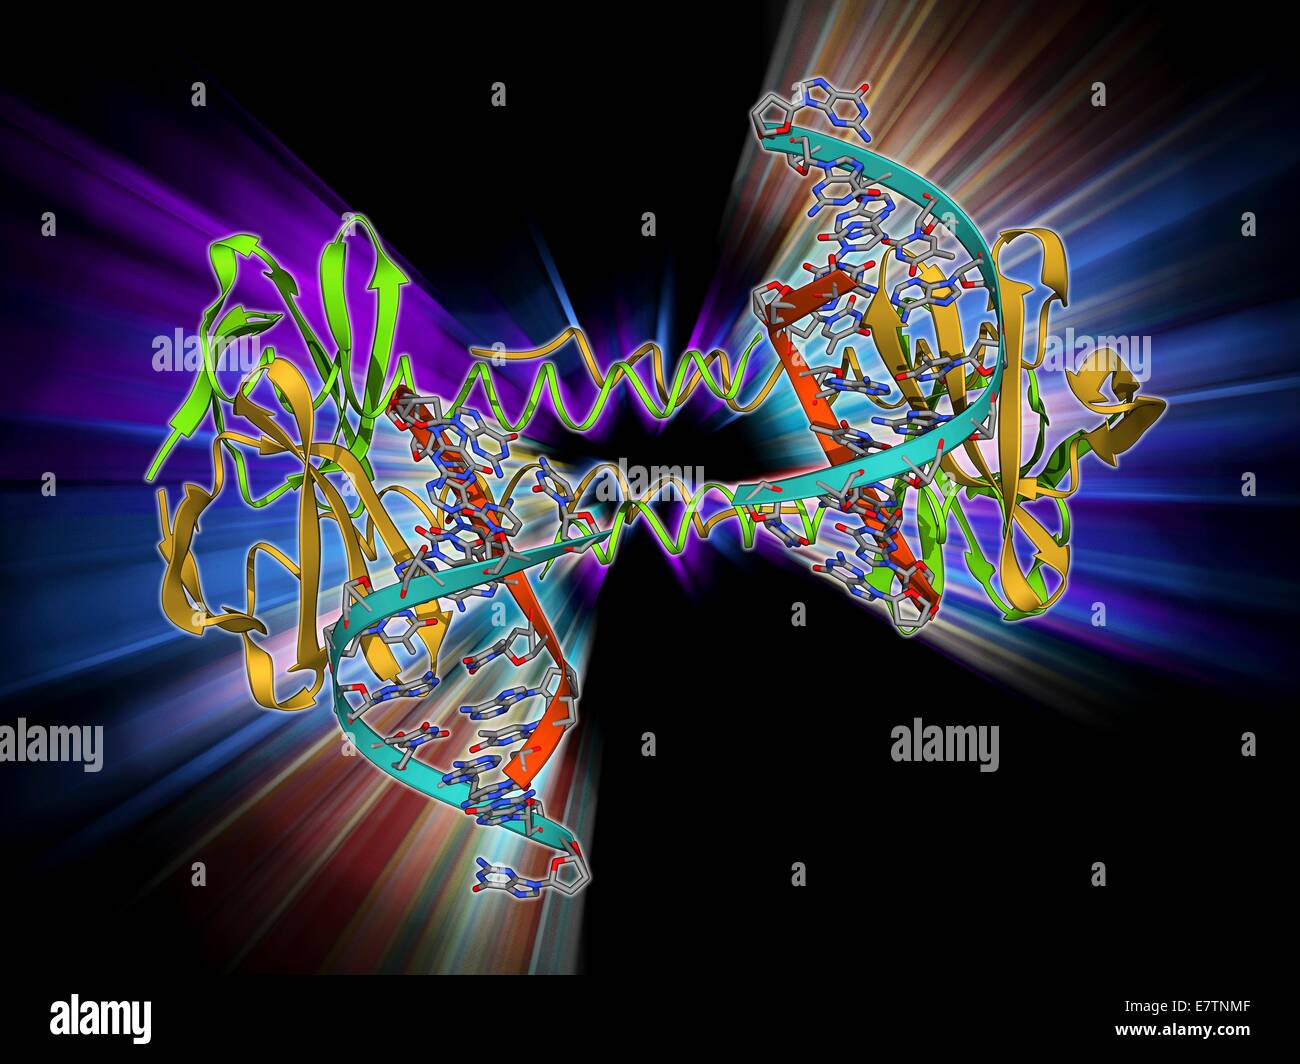 DNA-bindendes Protein. Molekülmodell des rekombinanten Proteins S7dLZ an DNA (Desoxyribonukleinsäure) Moleküle gebunden. S7dLZ besteht aus der DNA-bindendes Protein Sac7d und transcriptional Aktivator GCN4. Stockfoto